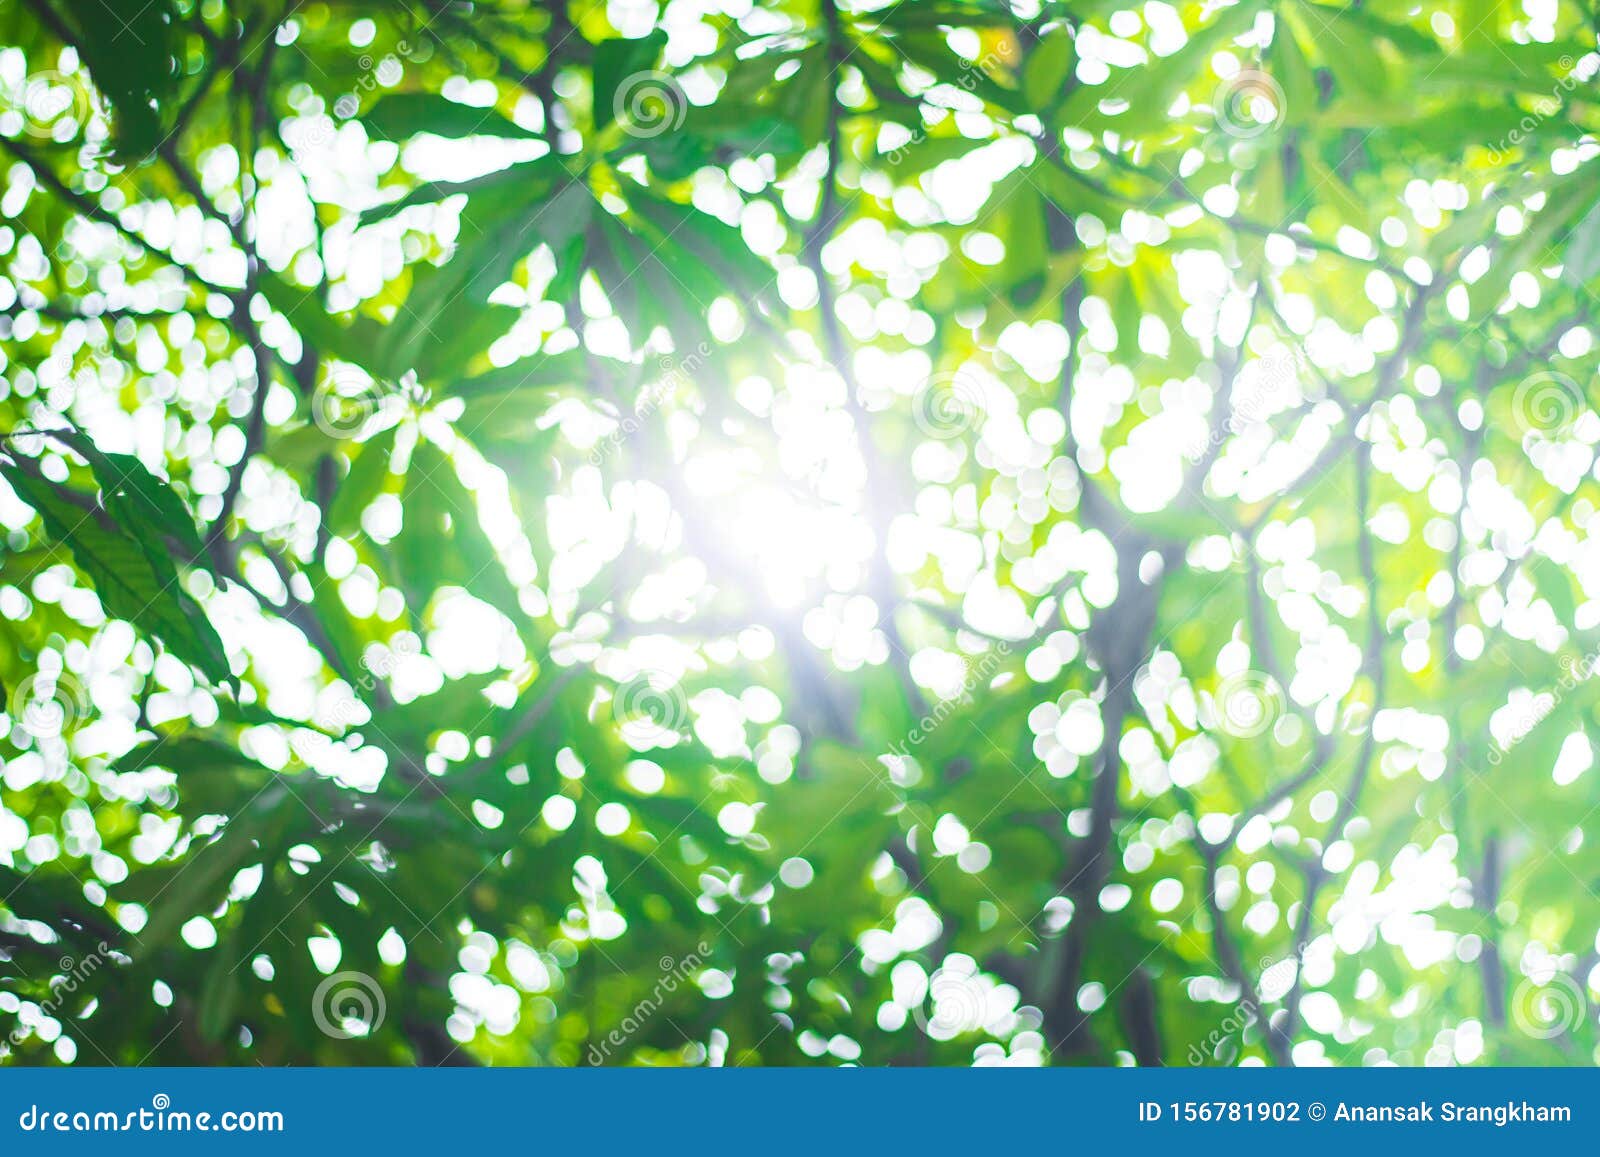 Green Nature Blur: Hình ảnh xanh rì của thiên nhiên sẽ khiến bạn thực sự thư giãn và được trải nghiệm thế giới xanh tươi. Hình ảnh xanh rì được xử lý theo phong cách mờ đẹp, khiến bạn cảm thấy như đang nhìn từ một khoảng cách xa và đem lại cảm giác bình yên và hạnh phúc.